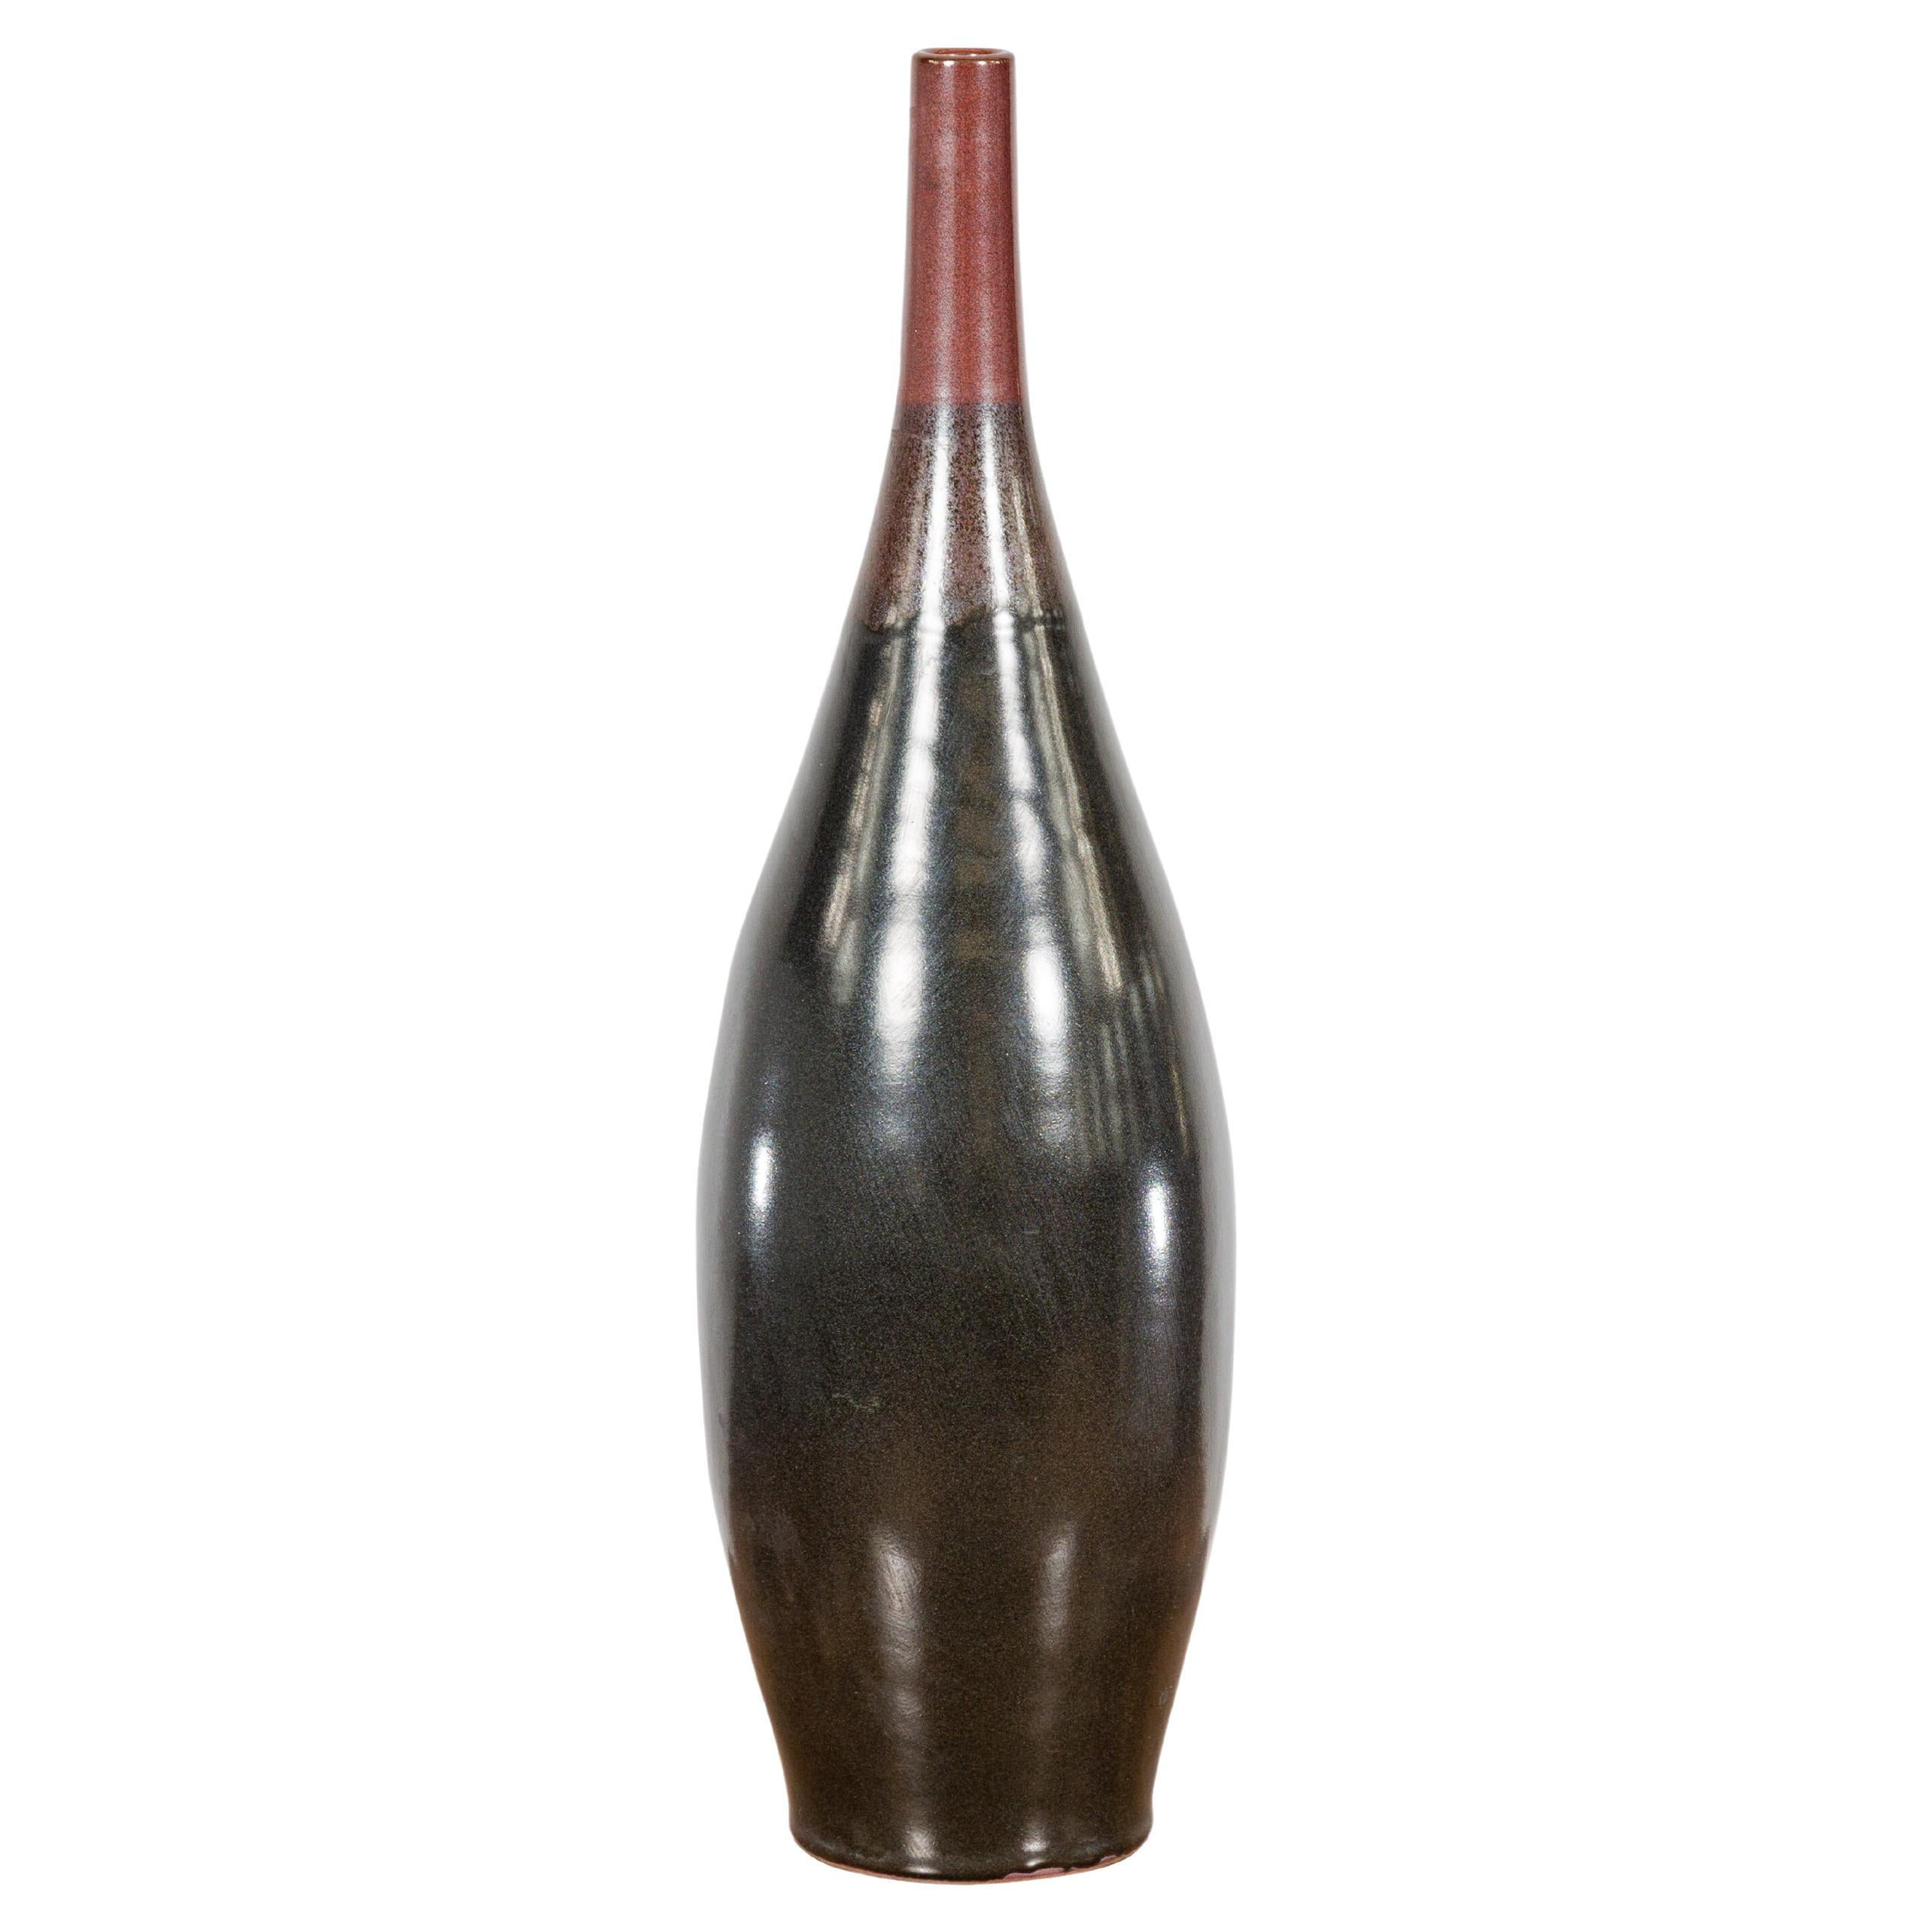 Vase élégant en céramique émaillée multicolore rouge, Brown et noire à bec étroit